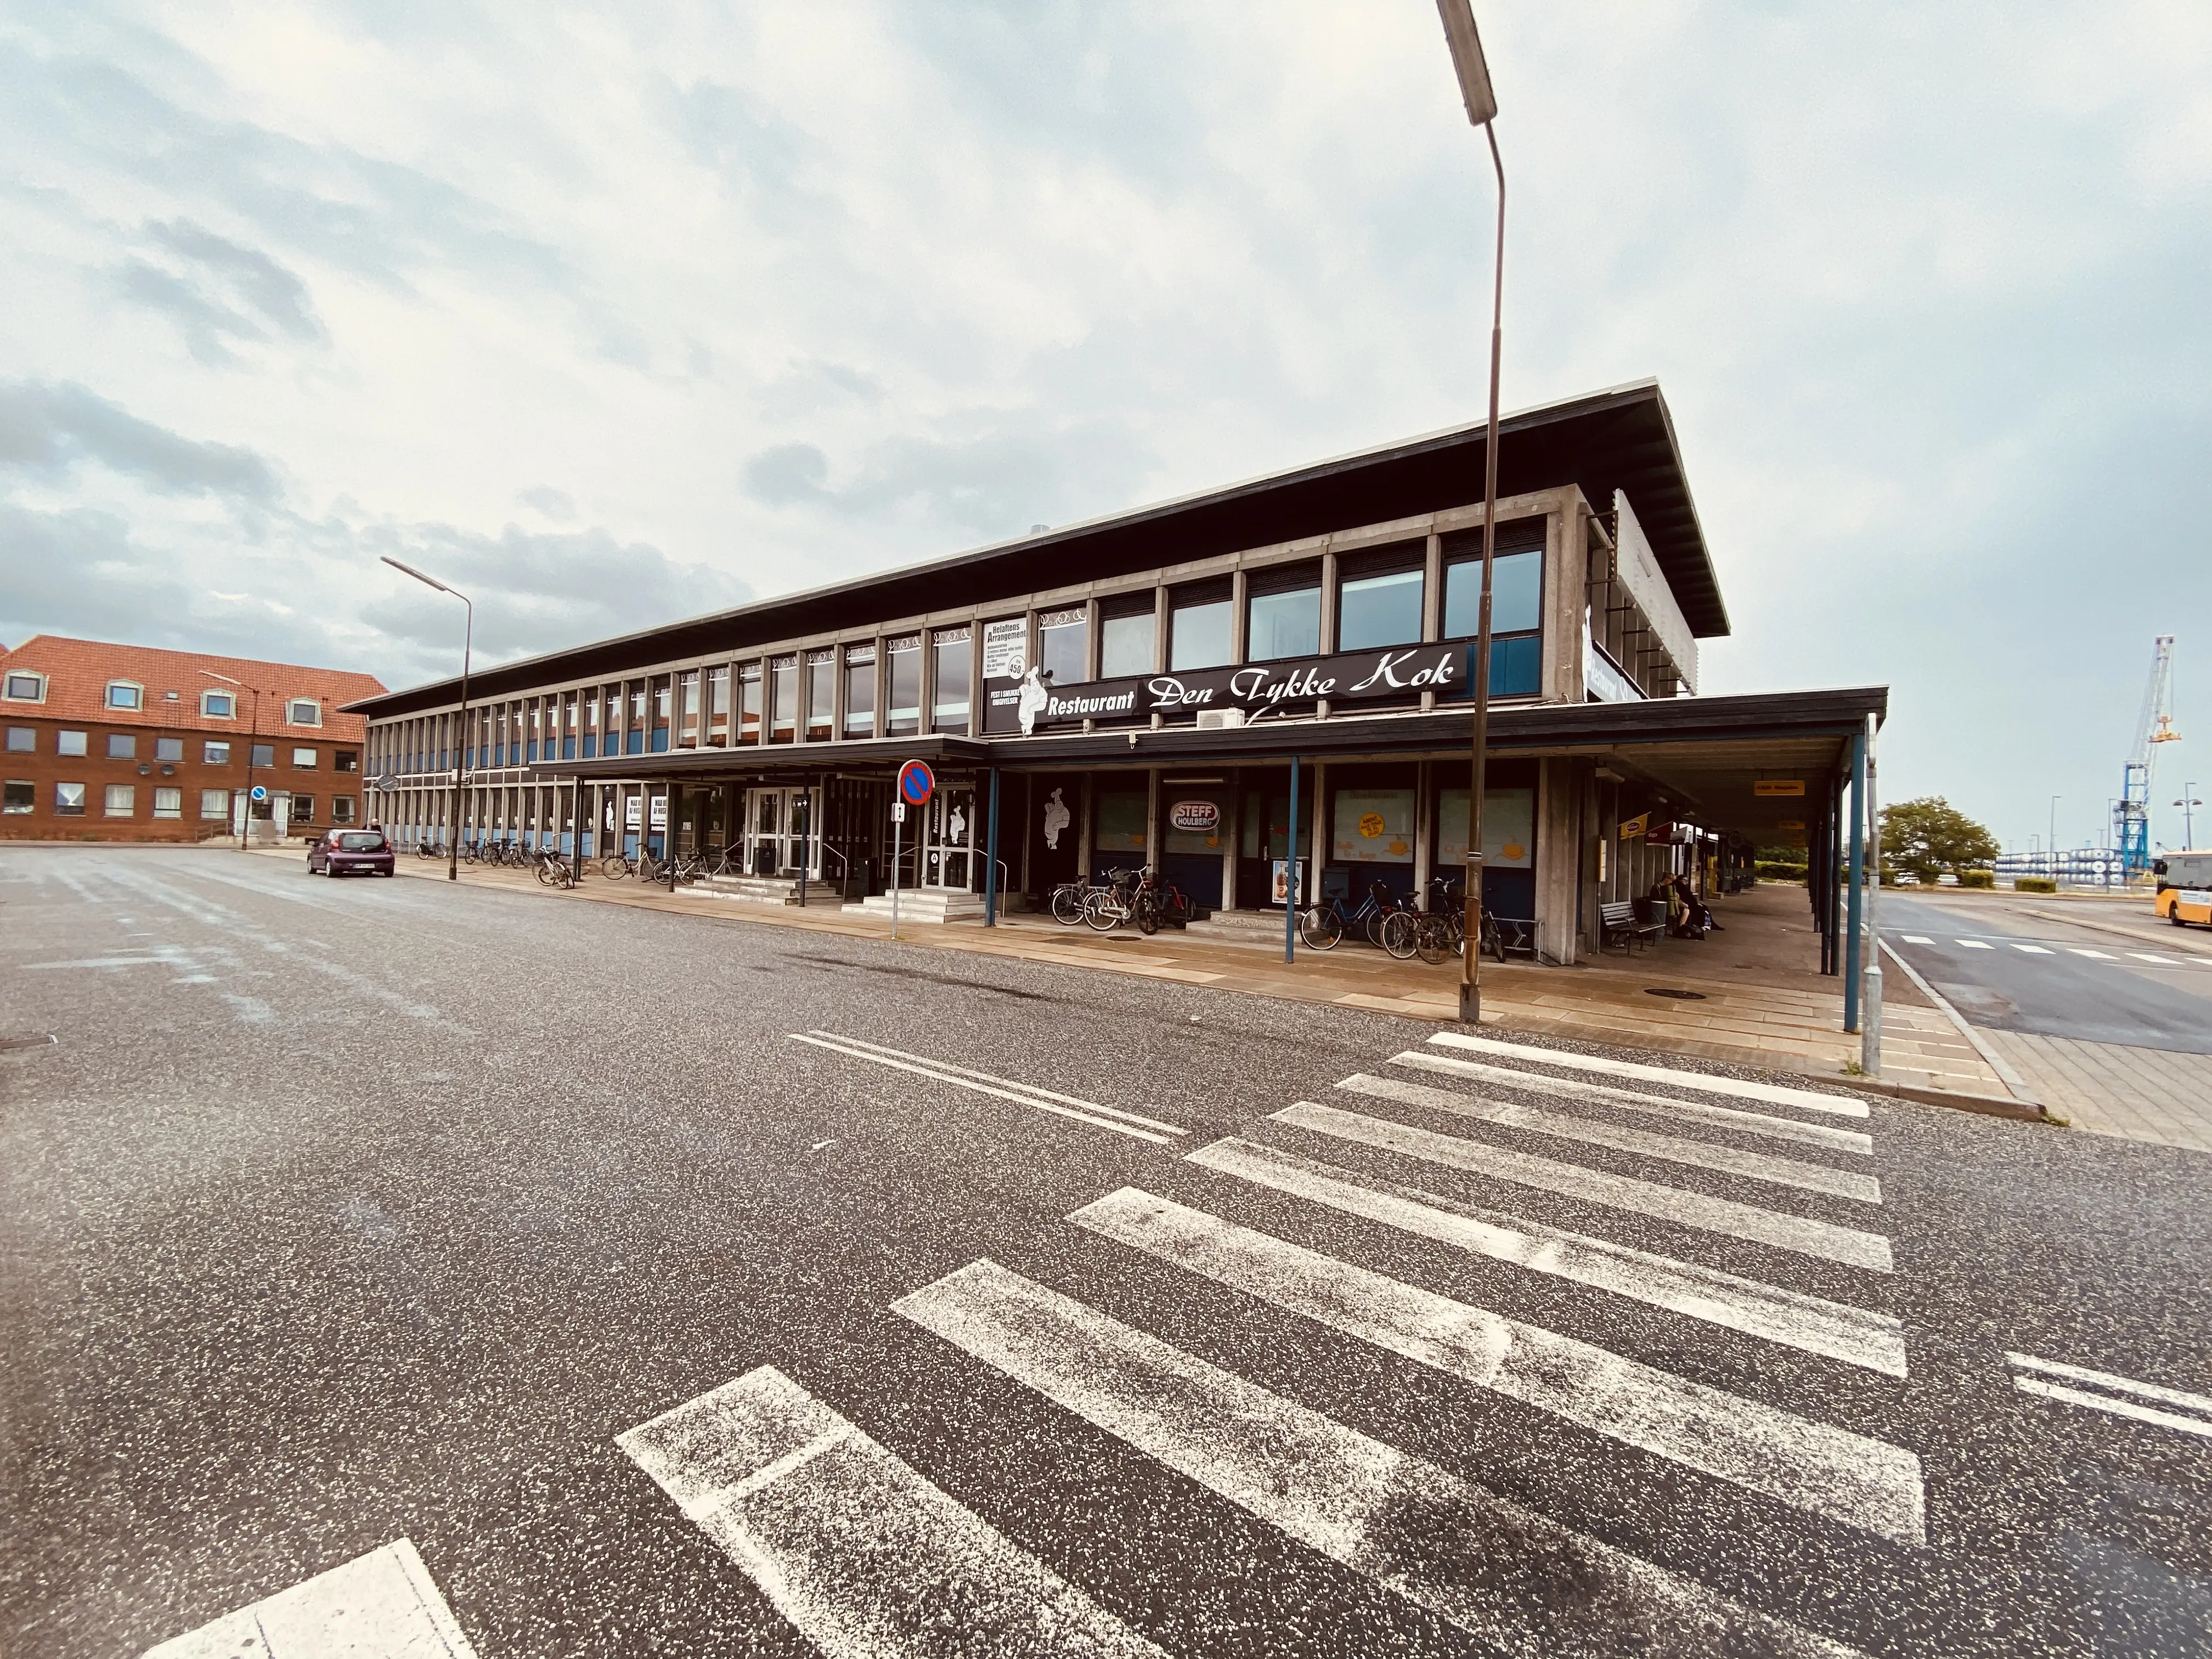 Billede af Kalundborg Station.